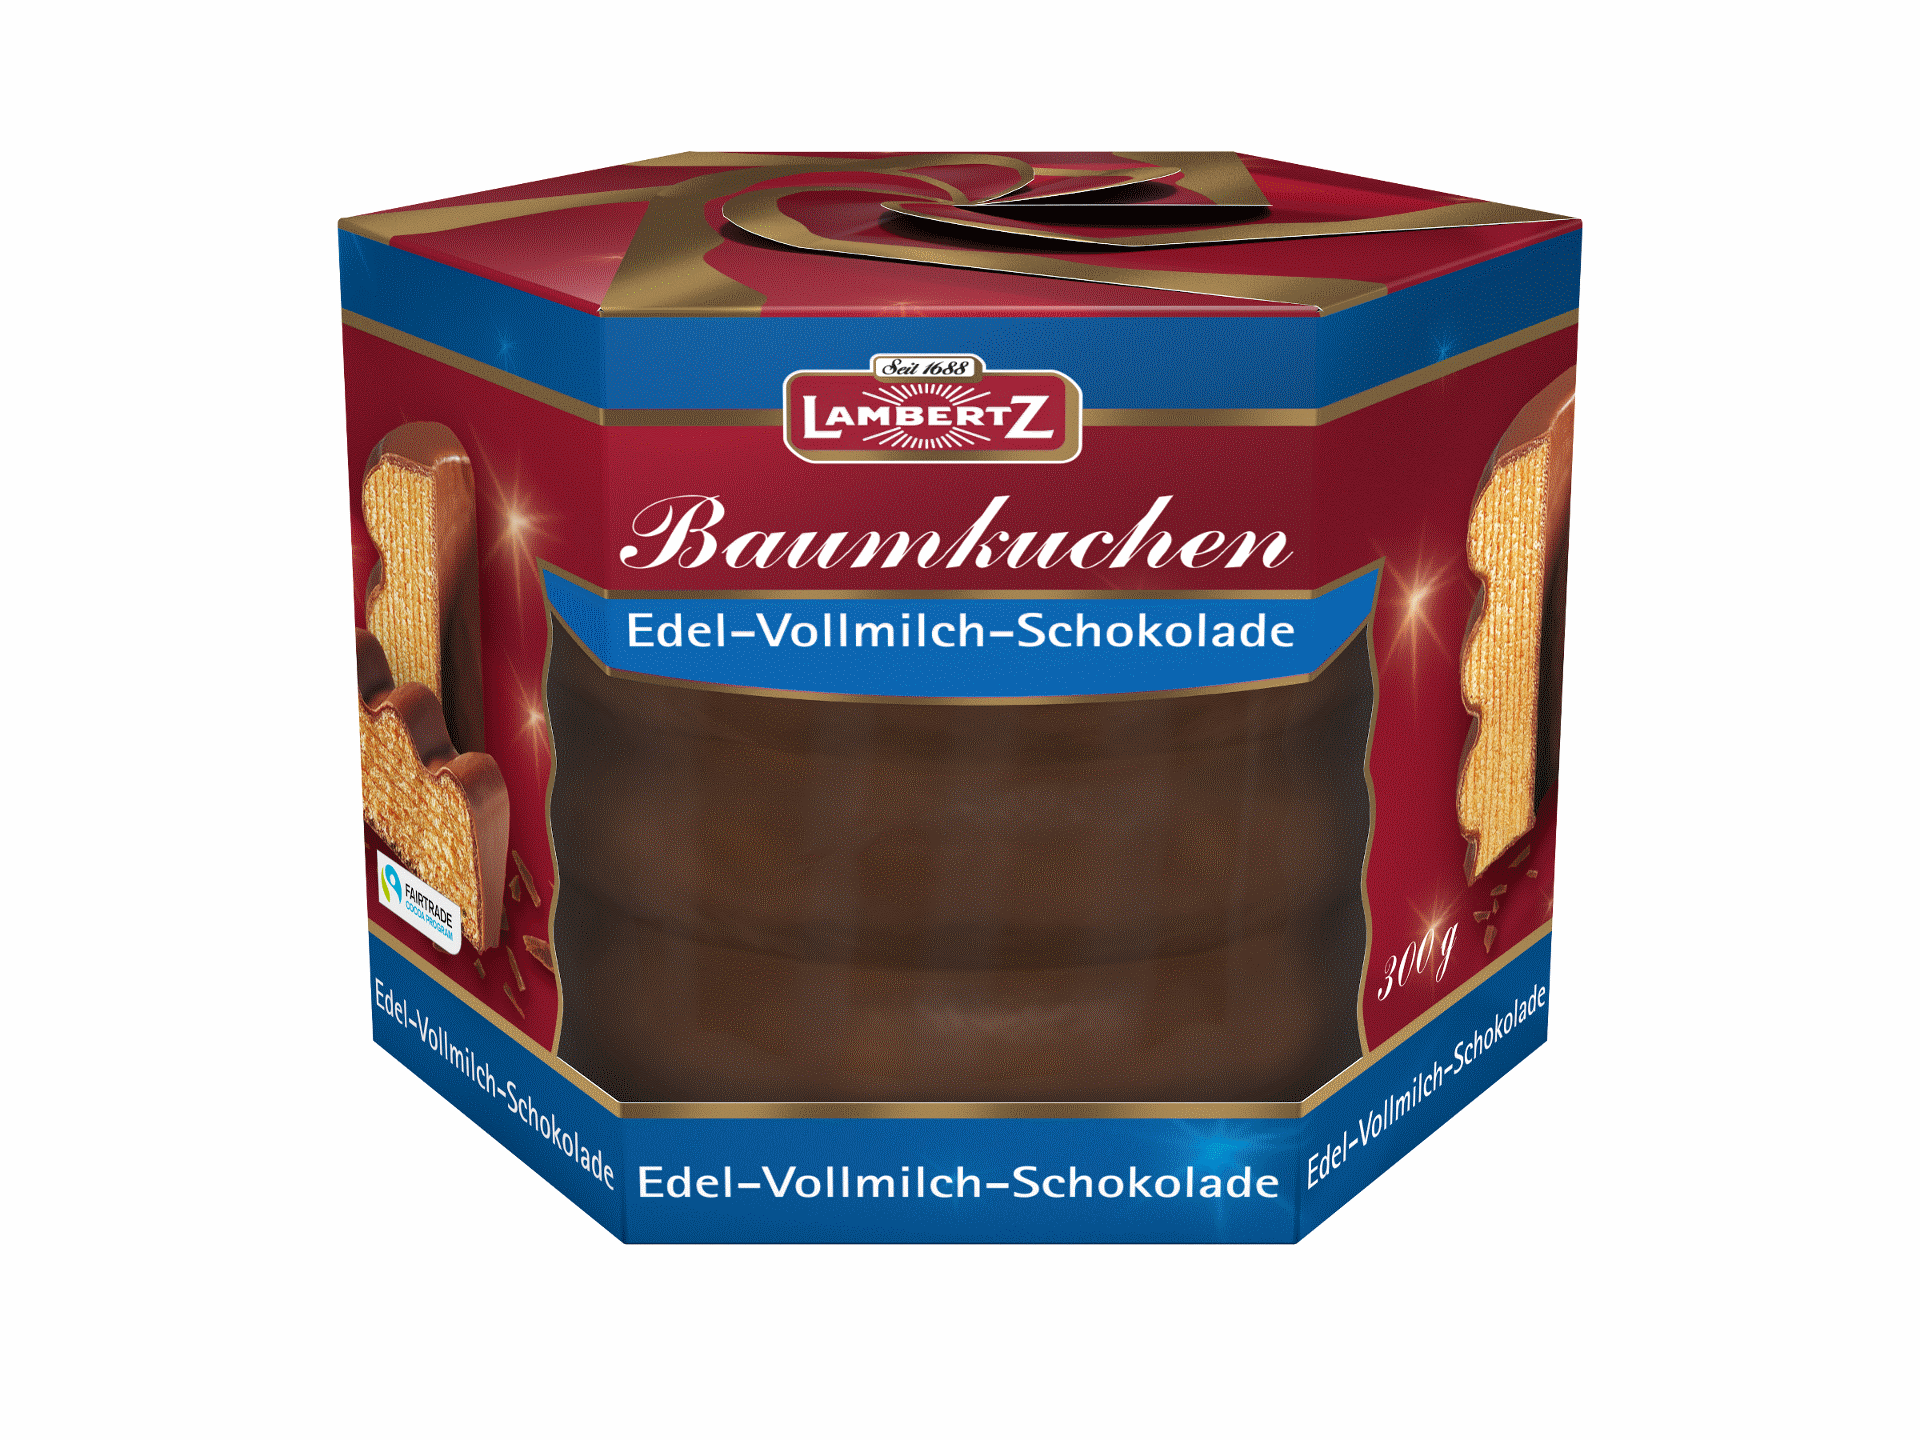 Baumkuchen Edel-Vollmilch-Schokolade